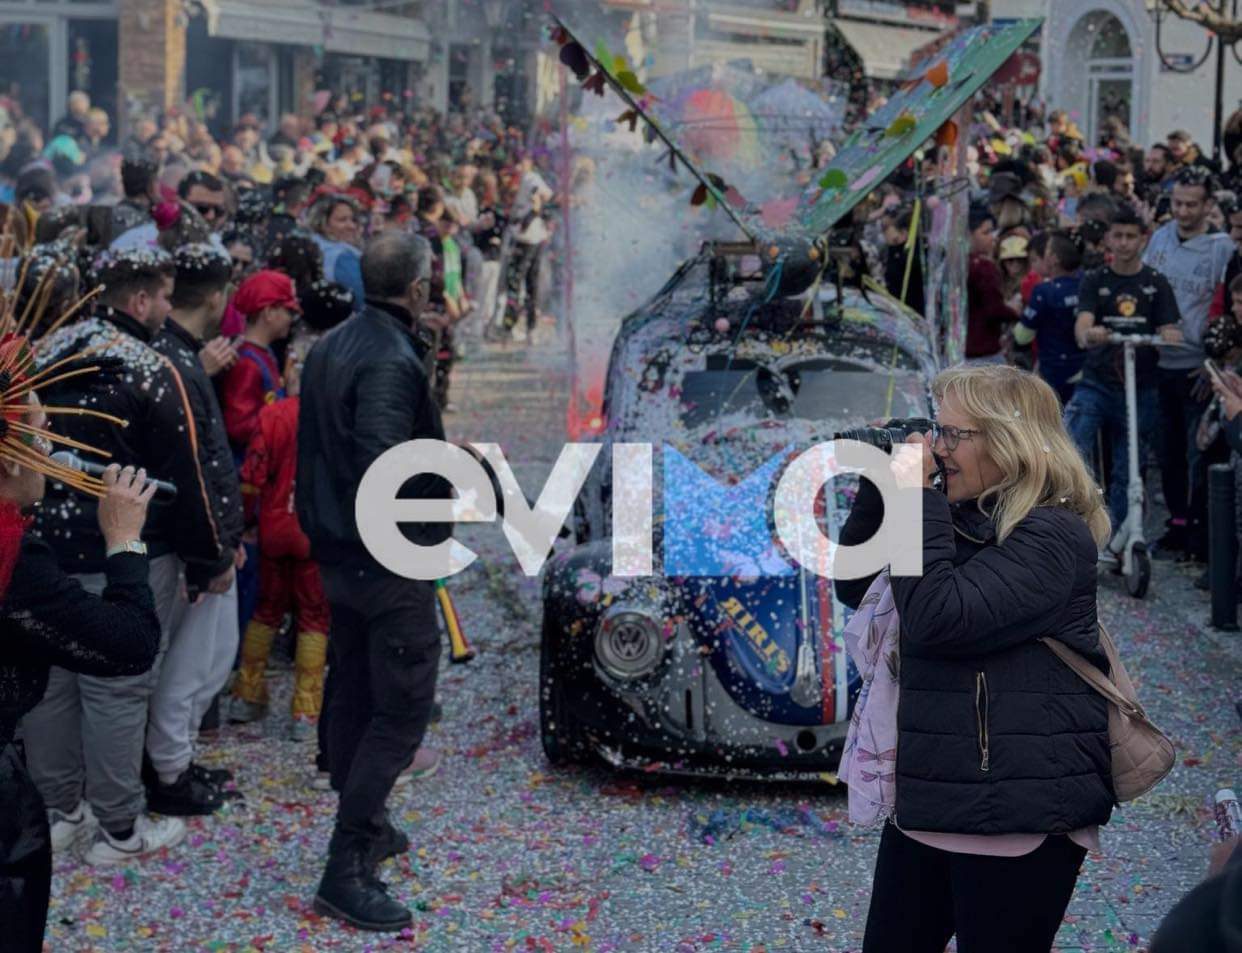 Καρναβάλι στην Κύμη: Χαμός στην πλατεία με τους καρναβαλιστές και τον Ινδιάνο αντιδήμαρχο (εικόνες&βίντεο)